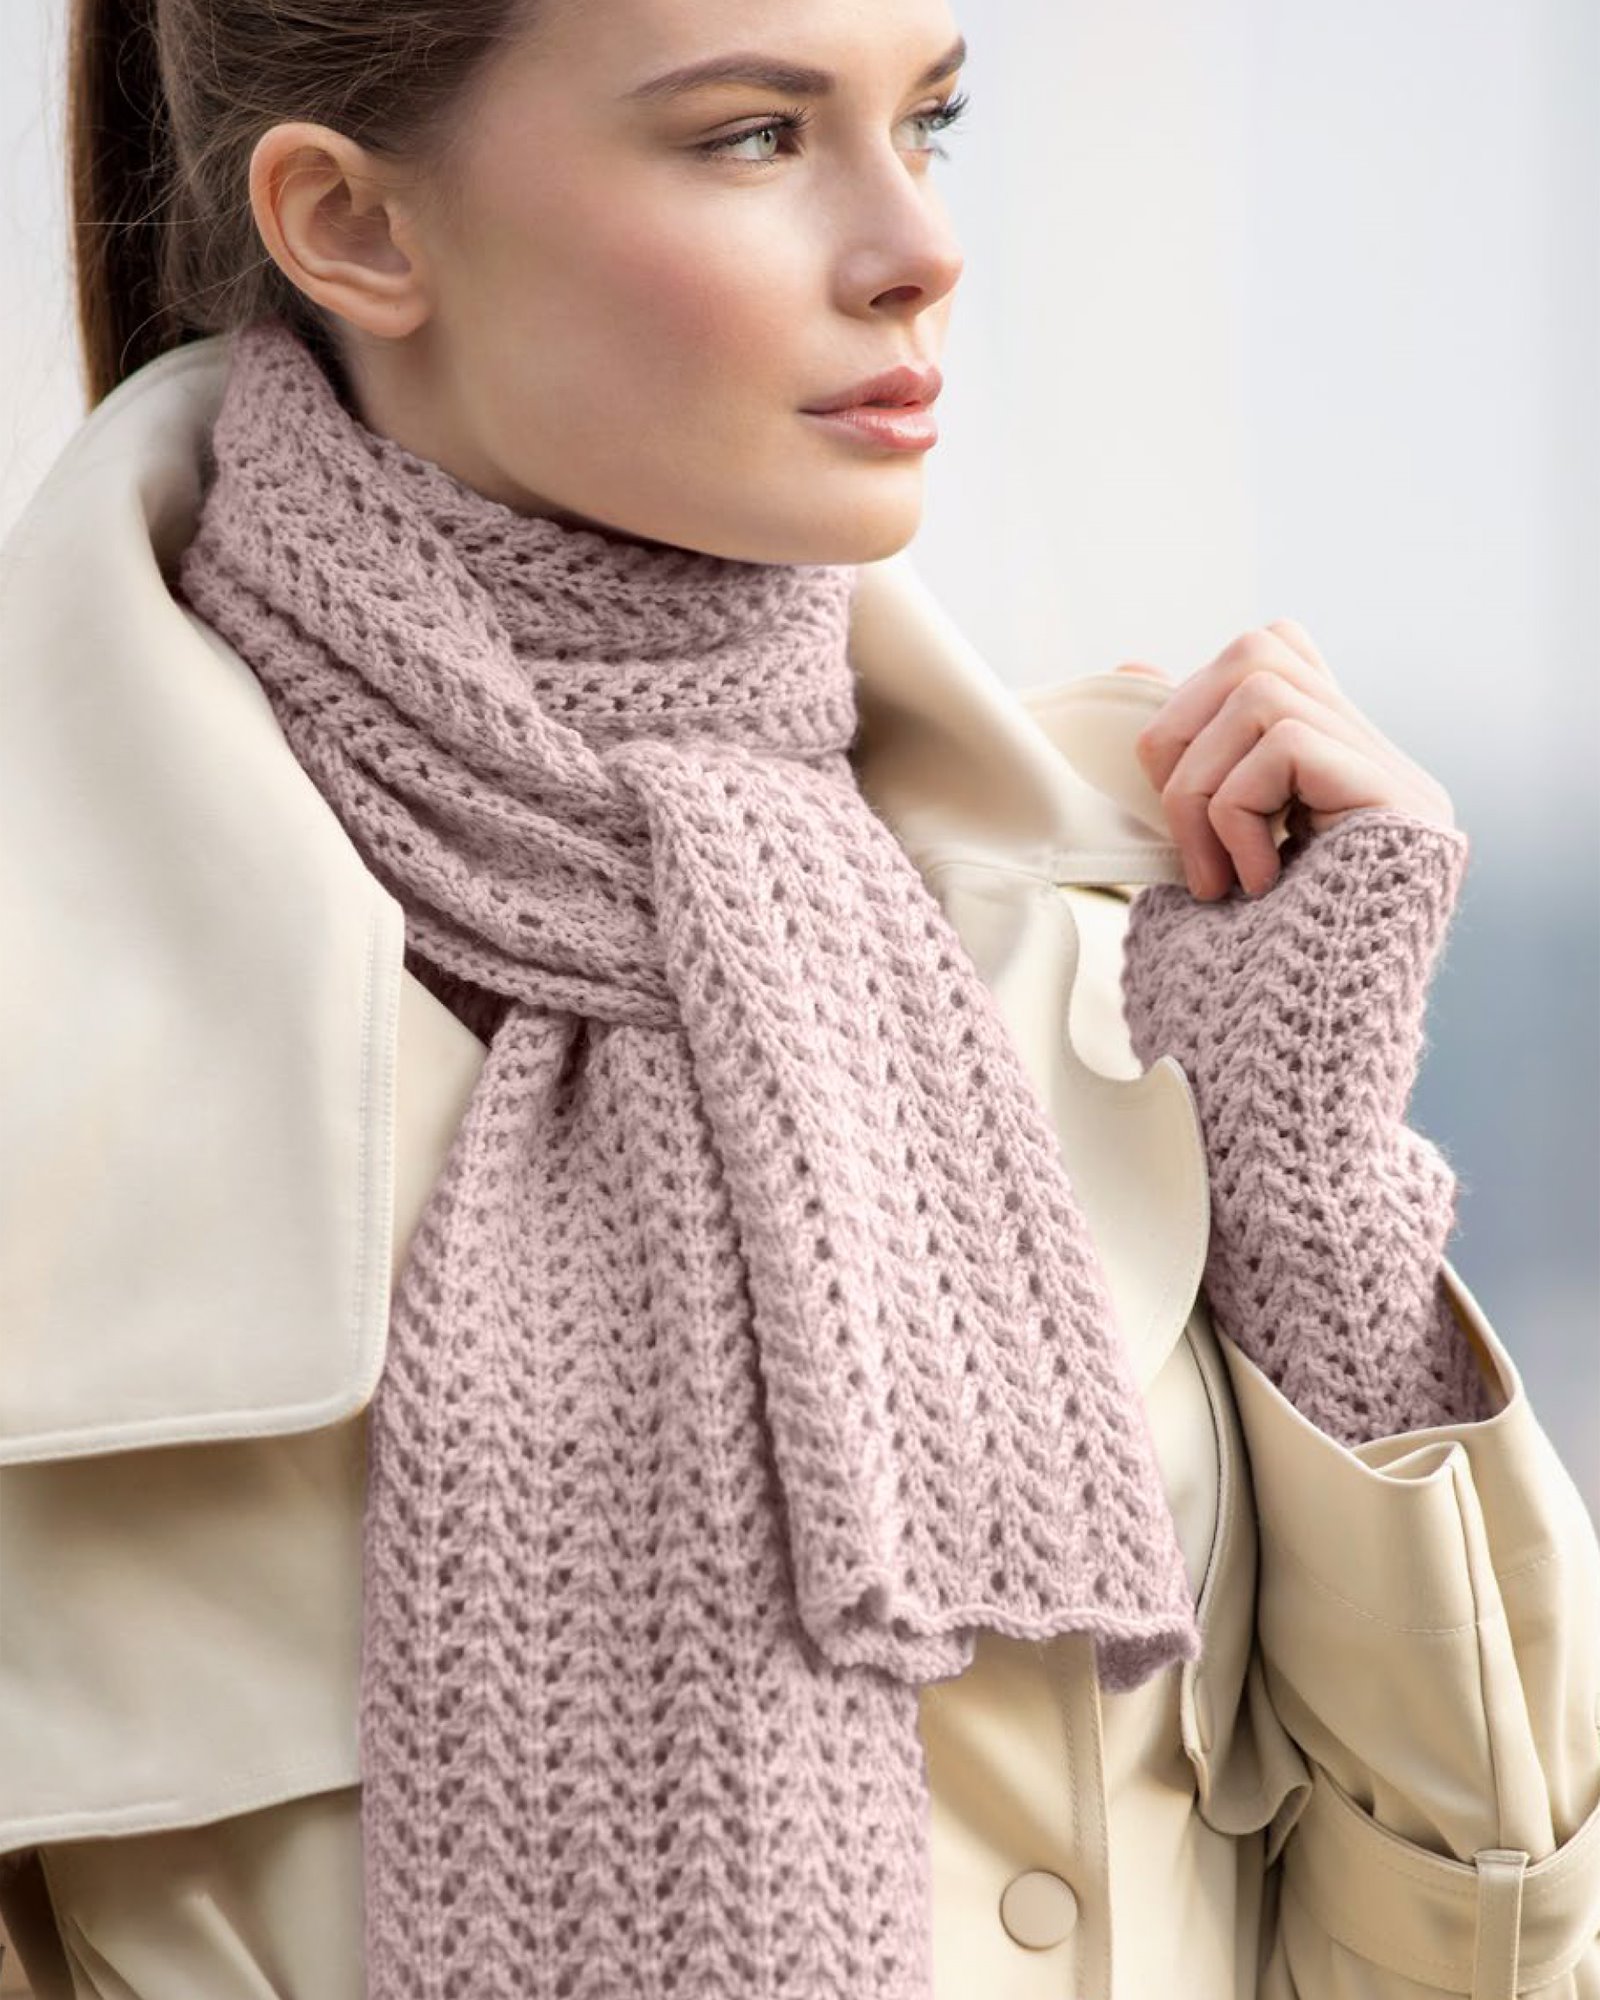 Du Store Alpakka, knitting pattern – Jenny Scarf & Wrist warmers DALE3006_Jenny_Scarf_Wrist_Warmers.jpg